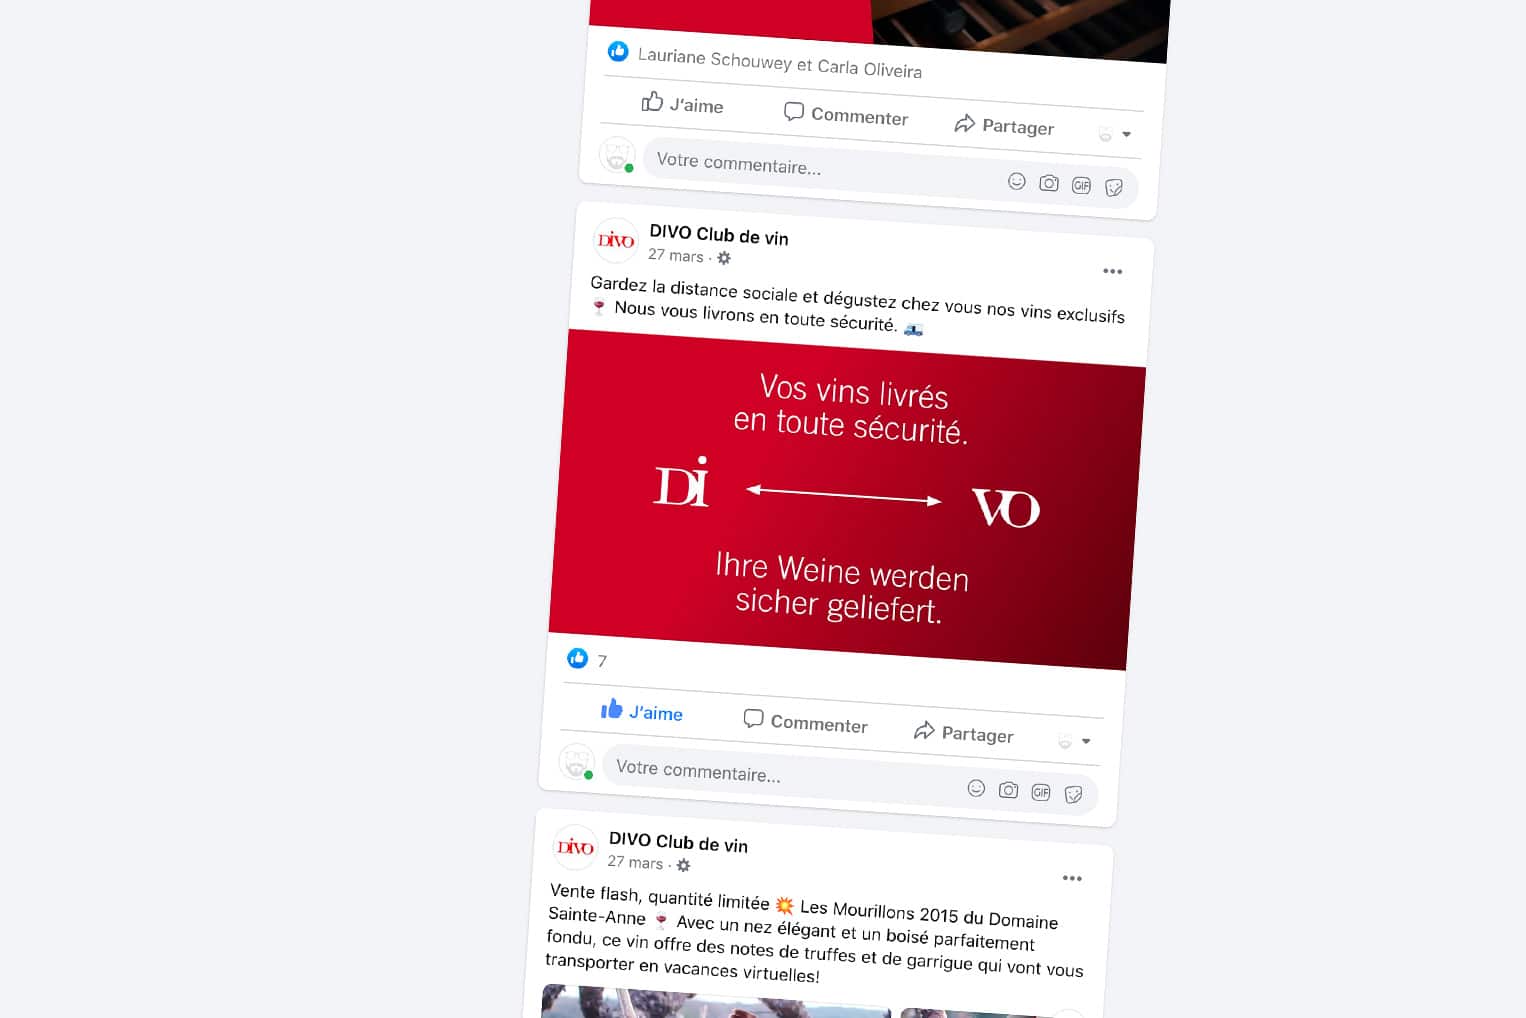 Publication Facebook réalisée pour le club de vins DIVO à l'occasion de l'annonce des mesures barrières pour limiter la propagation du nouveau coronavirus.